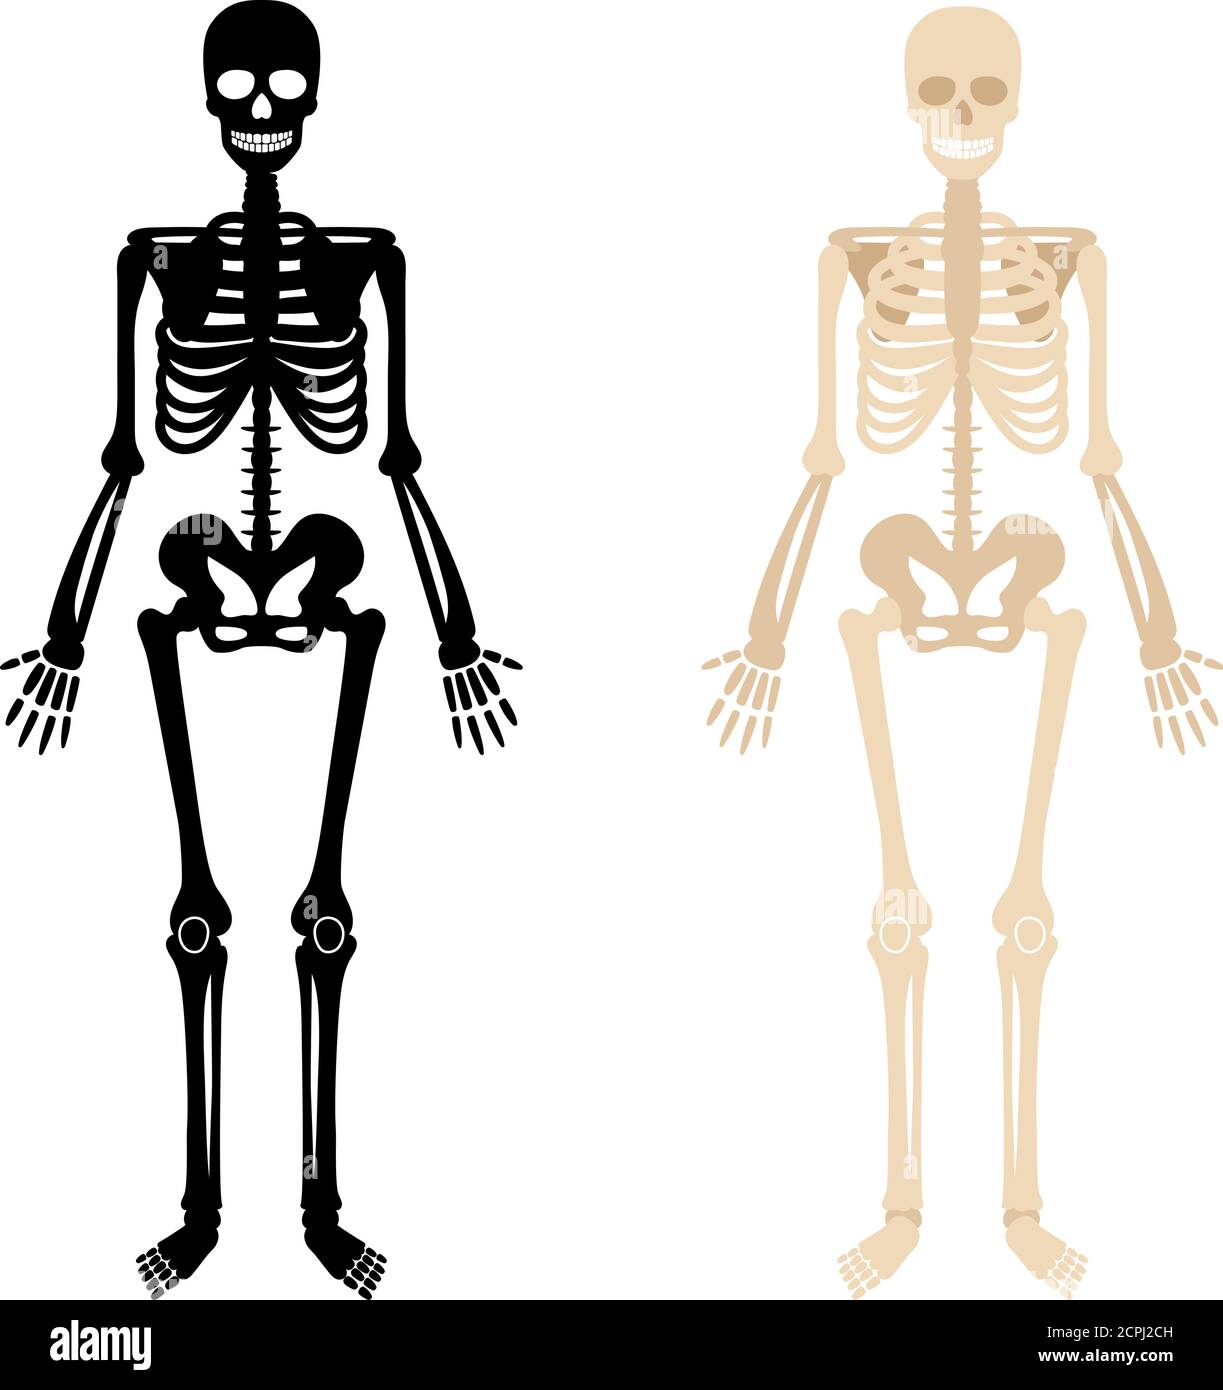 Squelette humain. OS arrière et blancs illustration du vecteur anatomique squelette, système de biologie squelettique isolé sur fond blanc Illustration de Vecteur